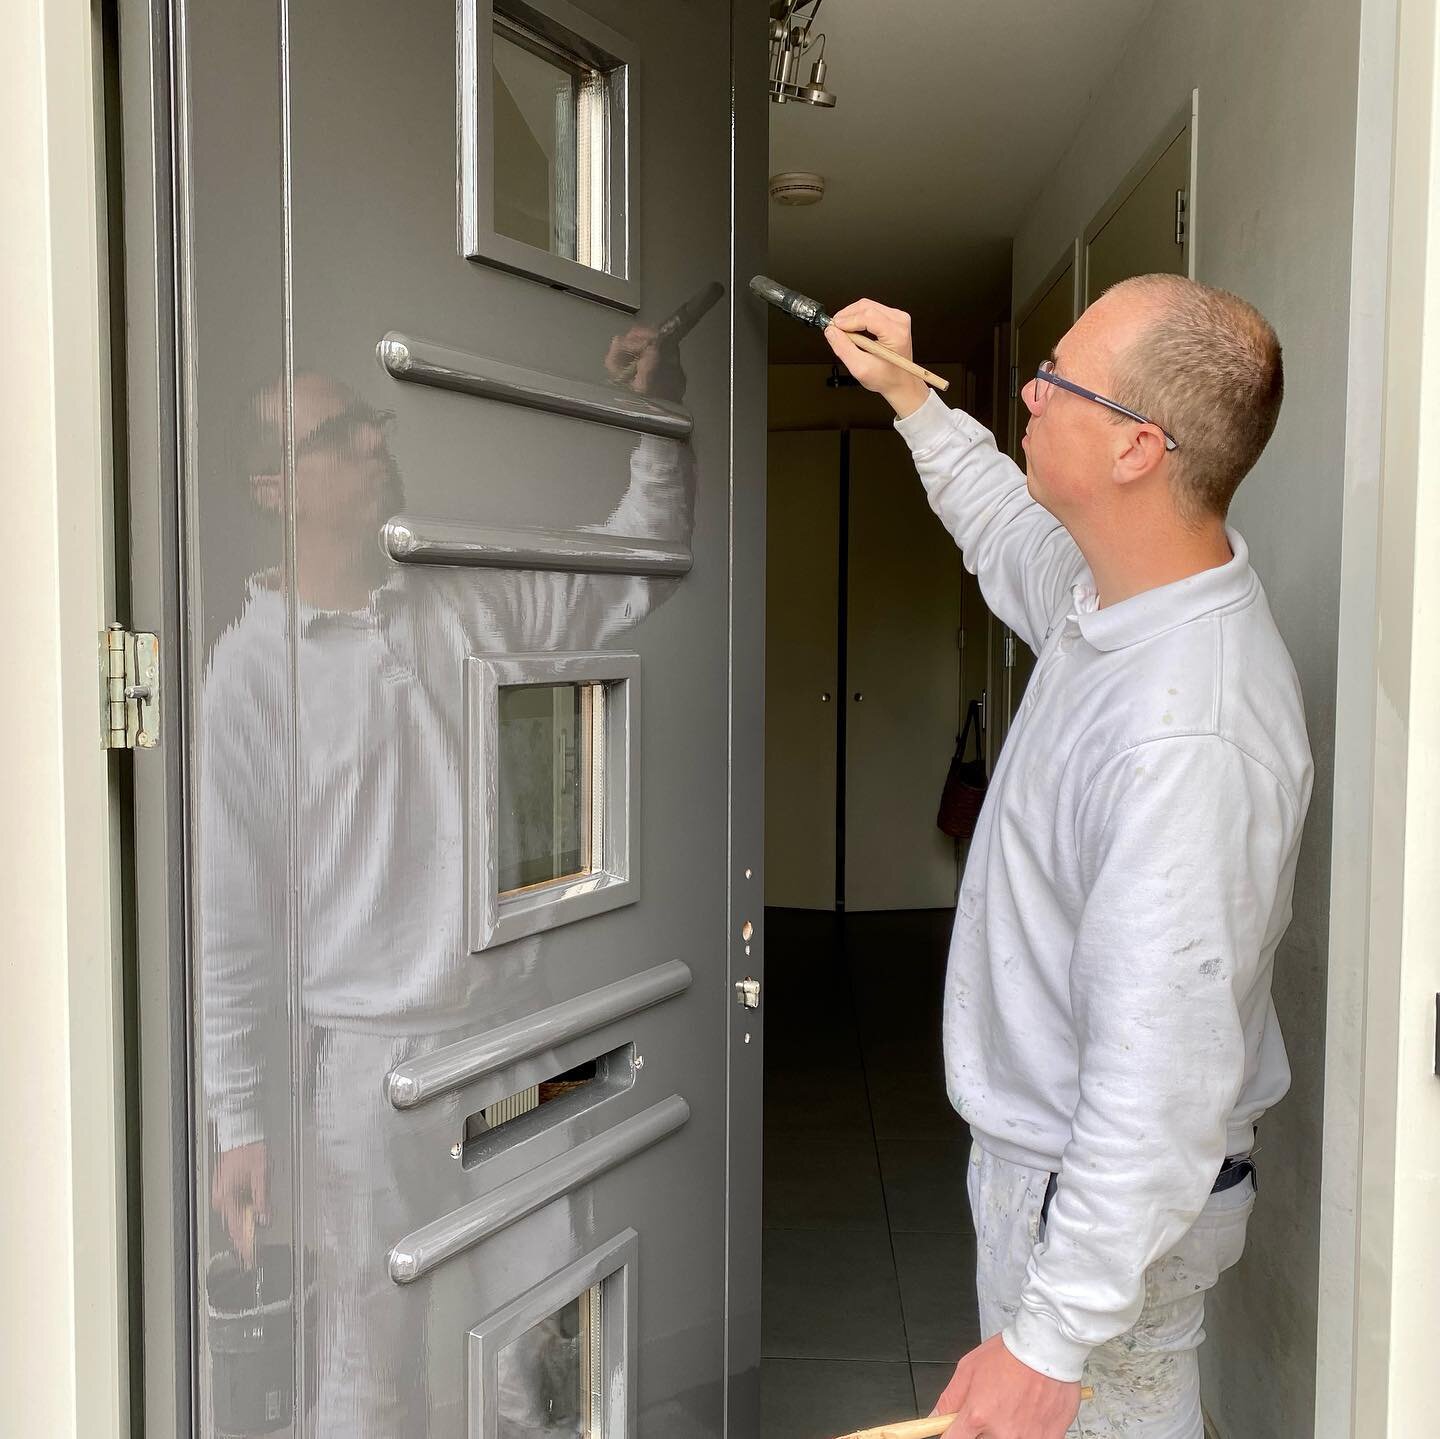 Wij zijn trots op onze vakman Dave Asseler! Hier is hij bezig met het aflakken van een voordeur in Heemstede in een prachtige grijze kleur. Het resultaat is verbluffend! 💪🎨 #asselerschilders #schildersbedrijf #vakmanschap #duurzaamheid #kwaliteit #